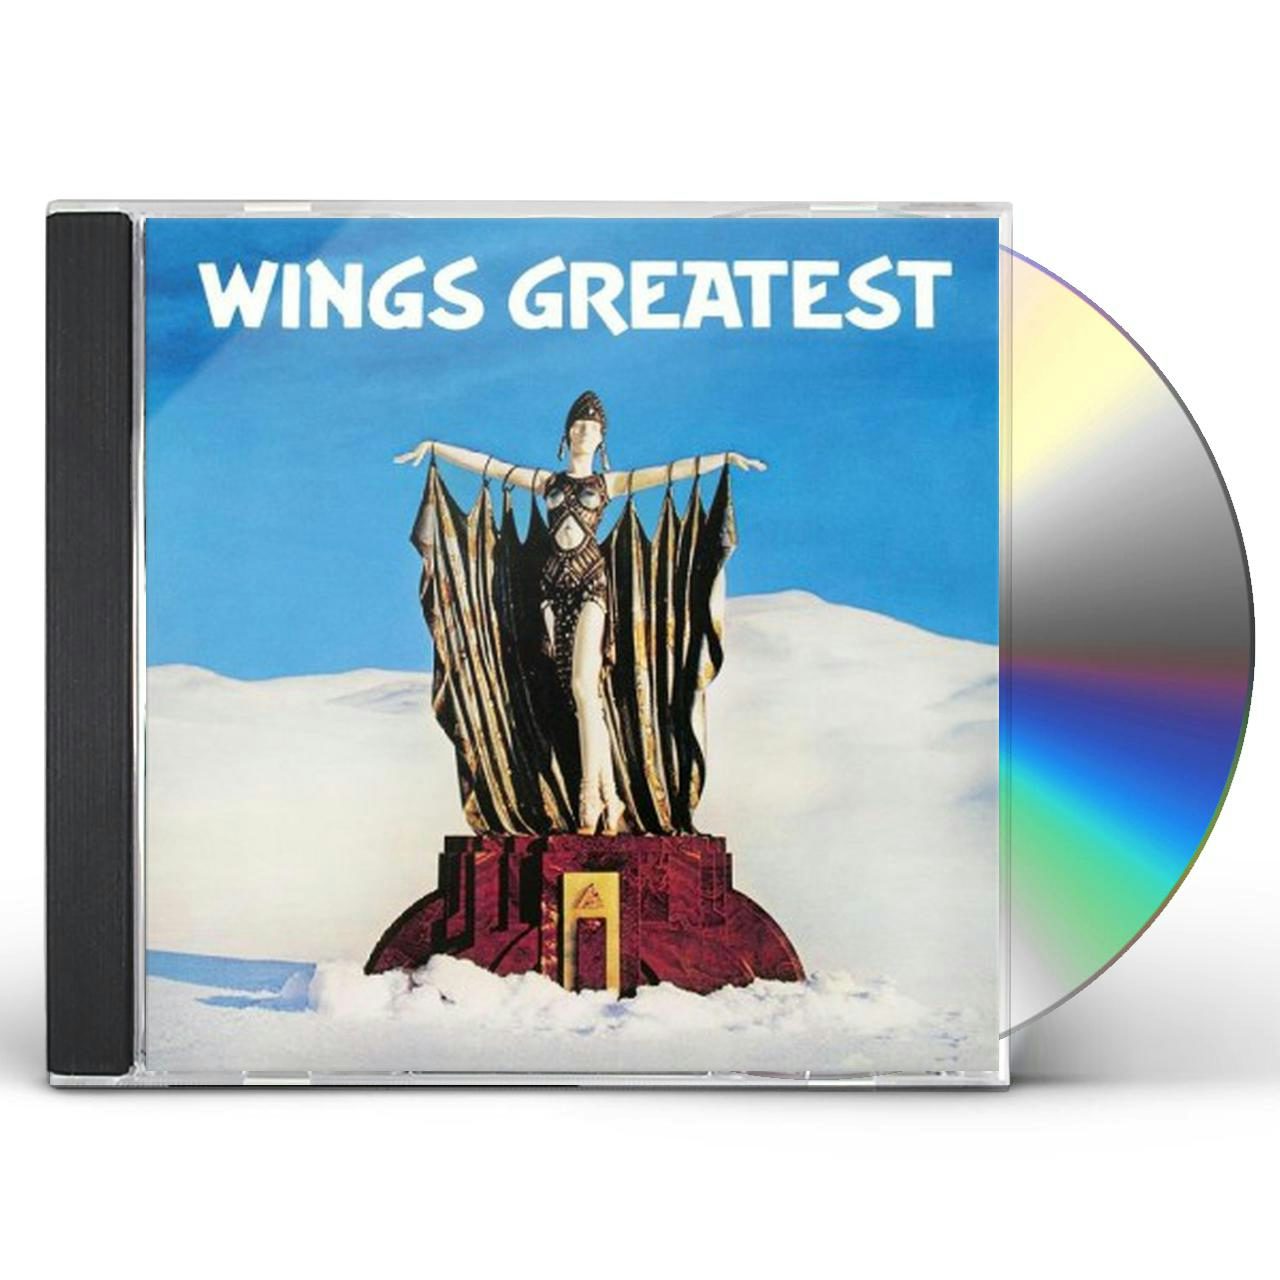 Paul McCartney & Wings GREATEST CD